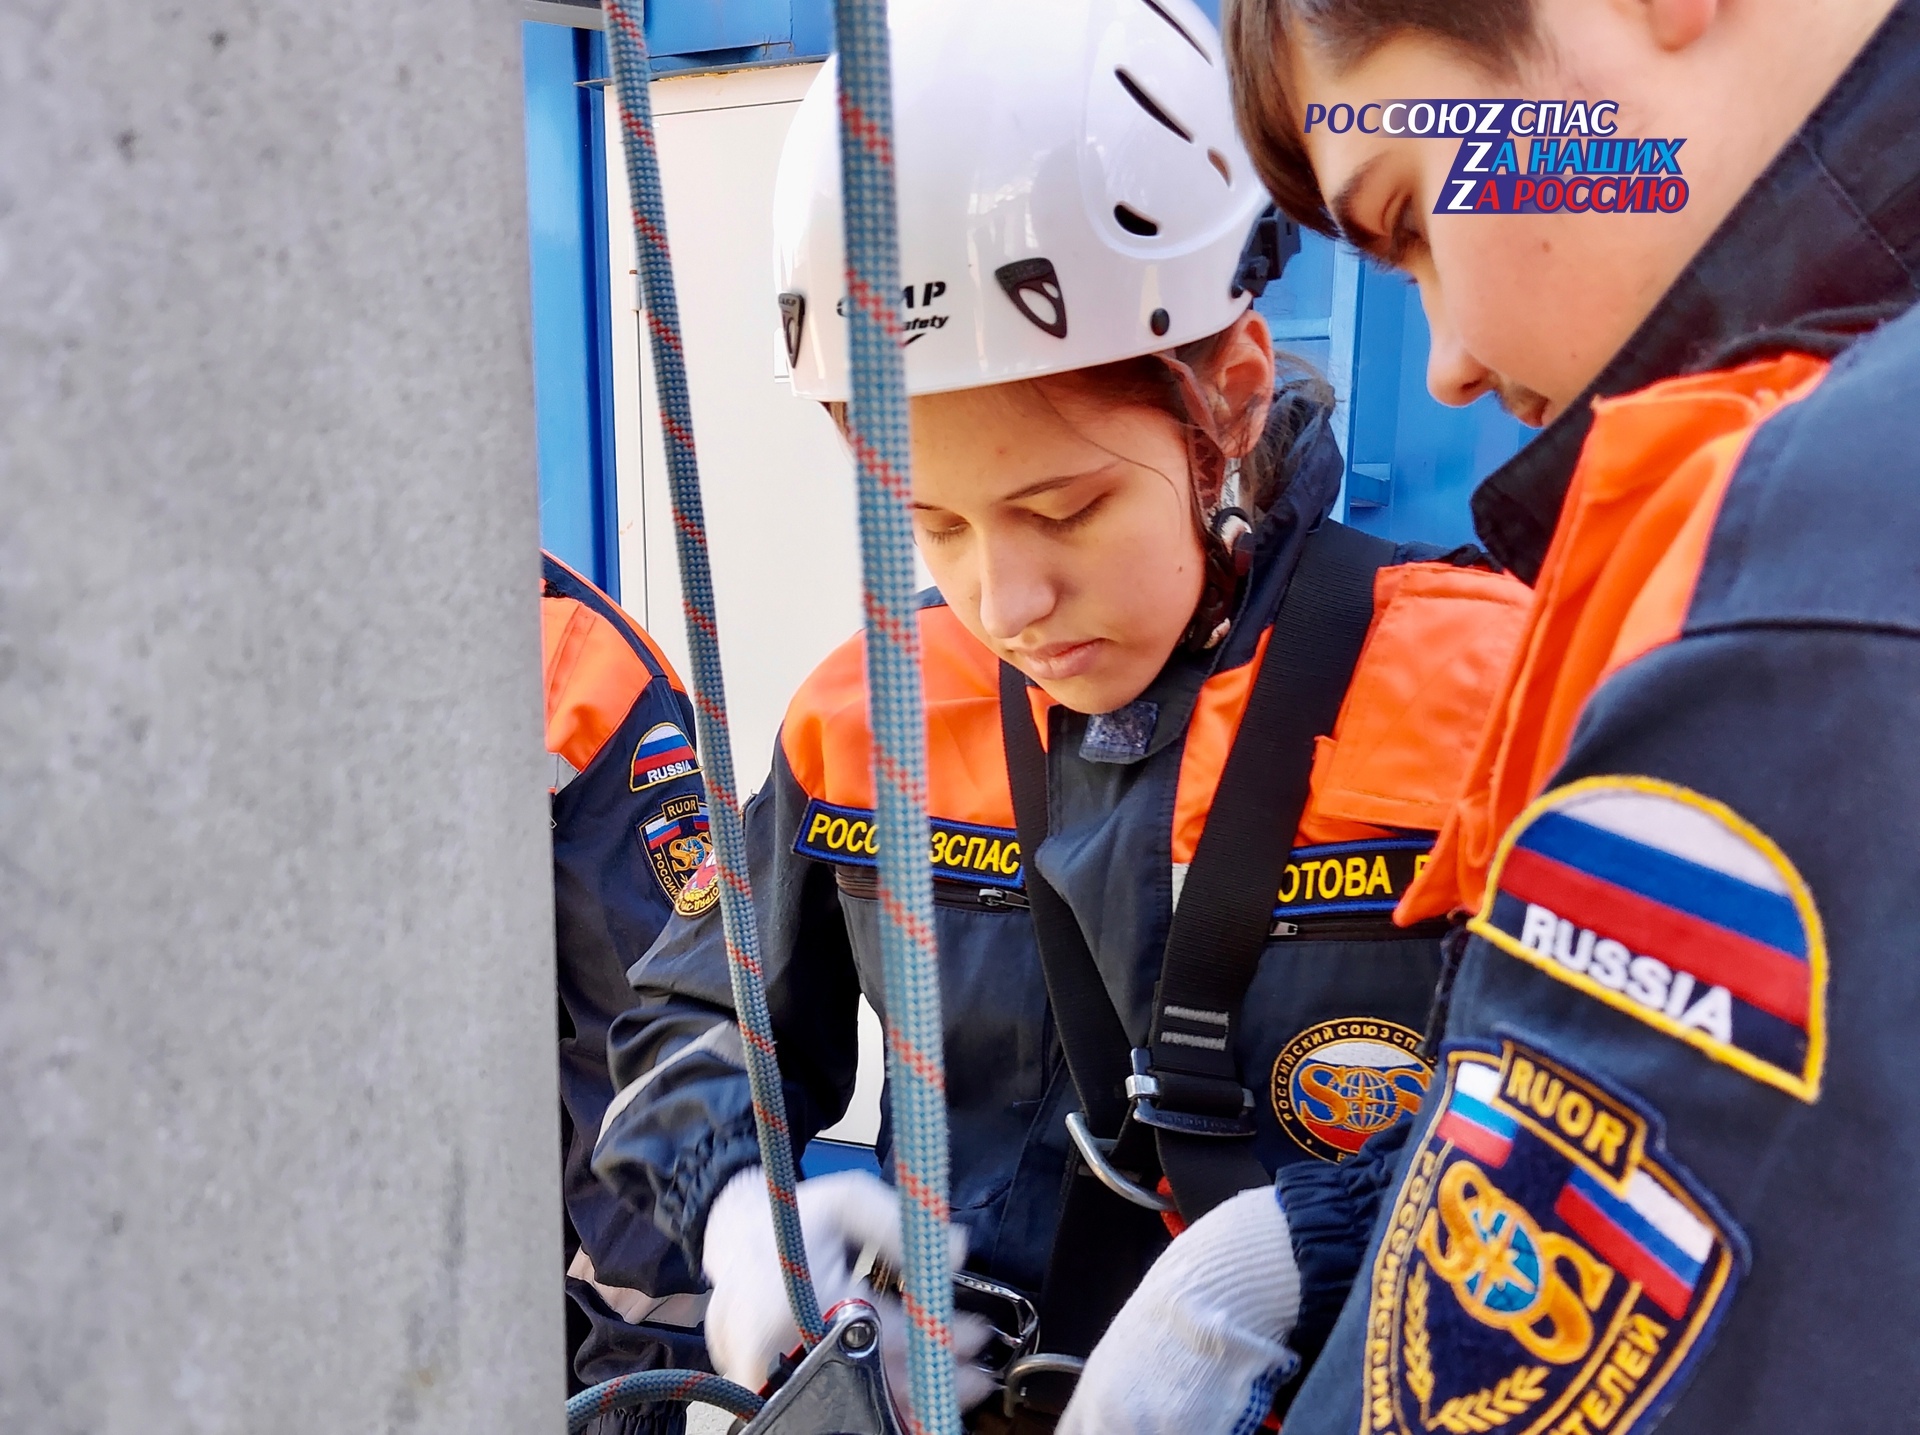 22 апреля на полигоне Пожарно-спасательного центра г. Москвы состоялись учебно-тренировочные сборы спасателей-добровольцев,  проводимые ОПСО «СпасРезерв»